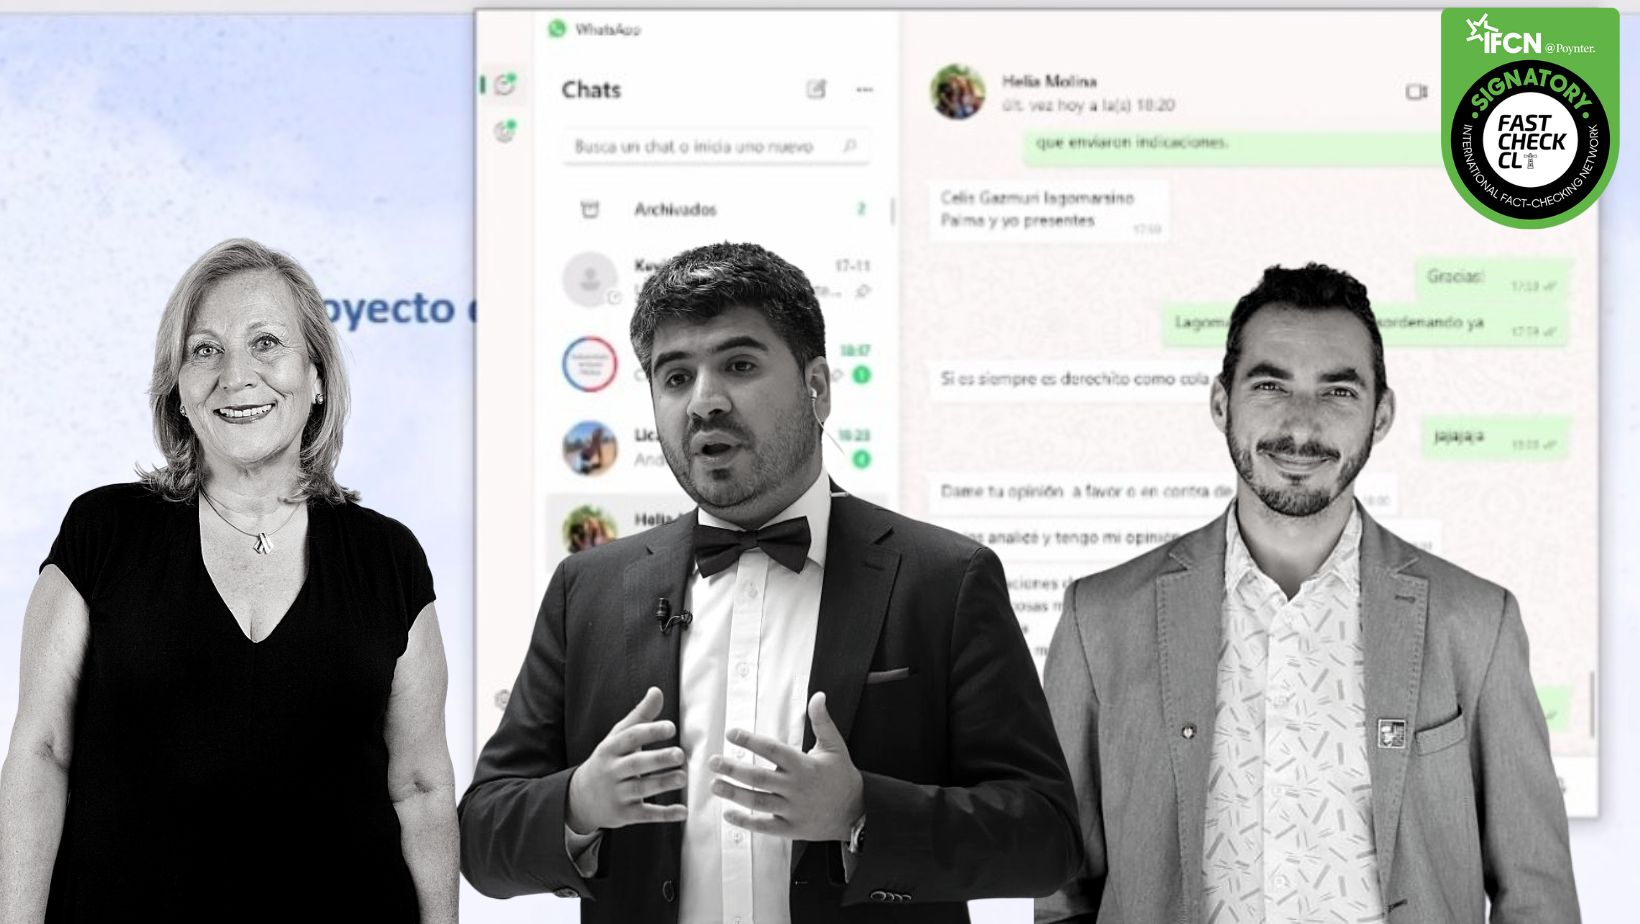 You are currently viewing “Derechito como cola de chancho”: el WhatsApp que compromete a la diputada Helia Molina con el subsecretario Cuadrado